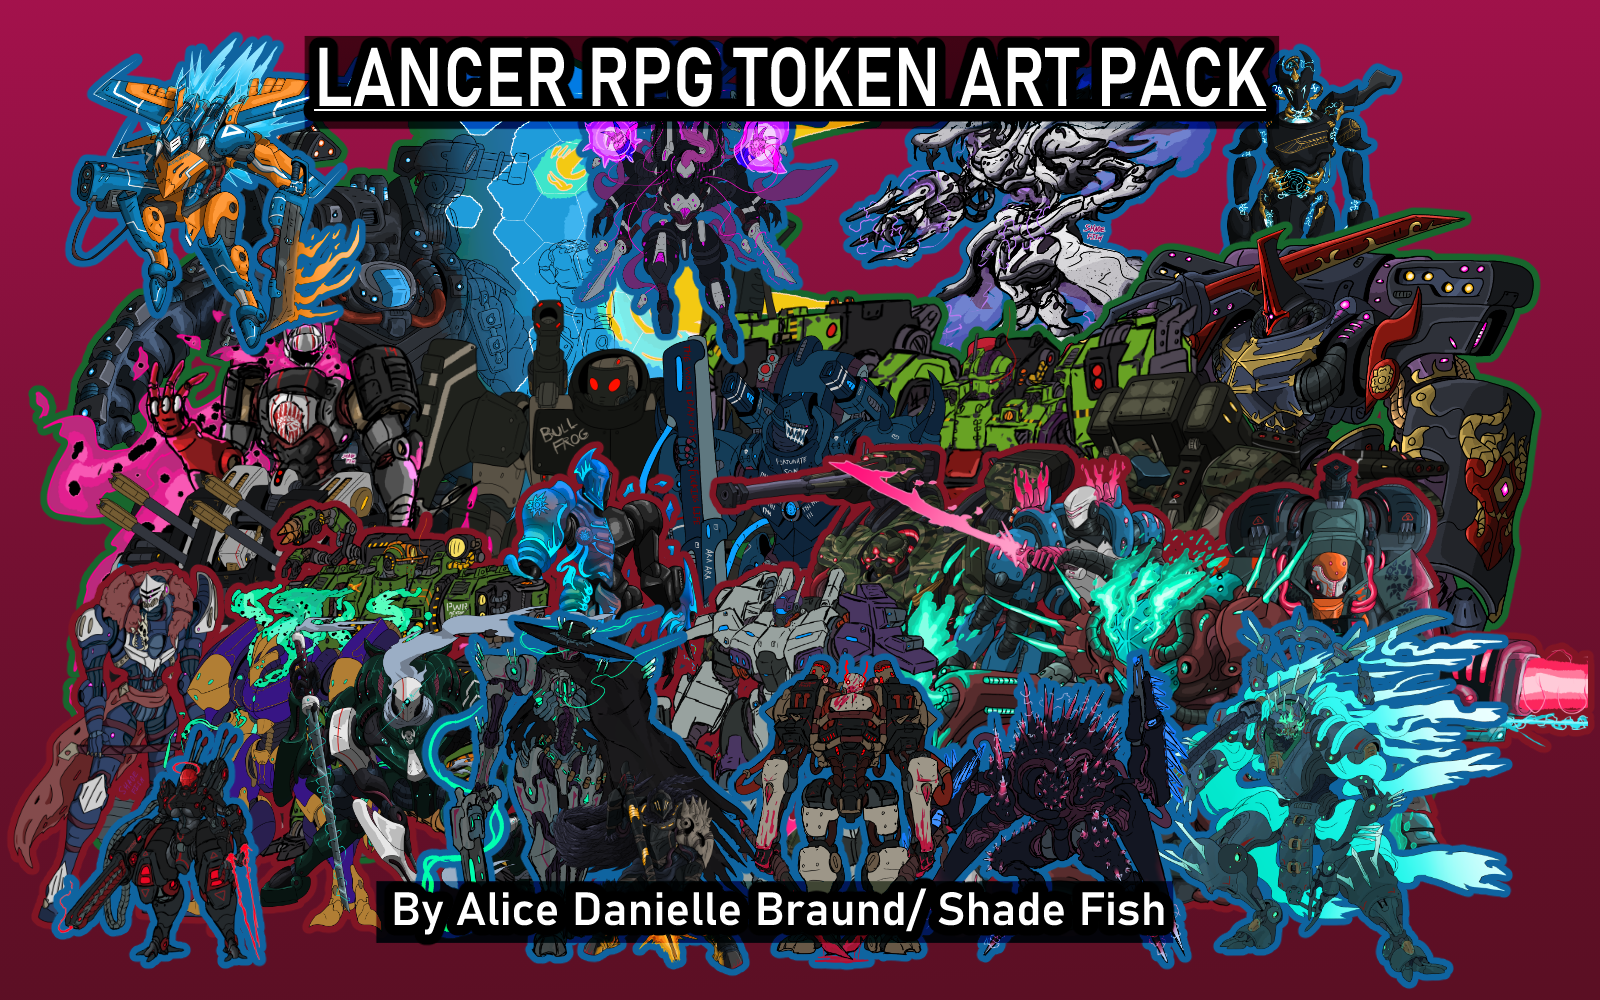 Shade Fish's LancerRPG Mech Token Pack!